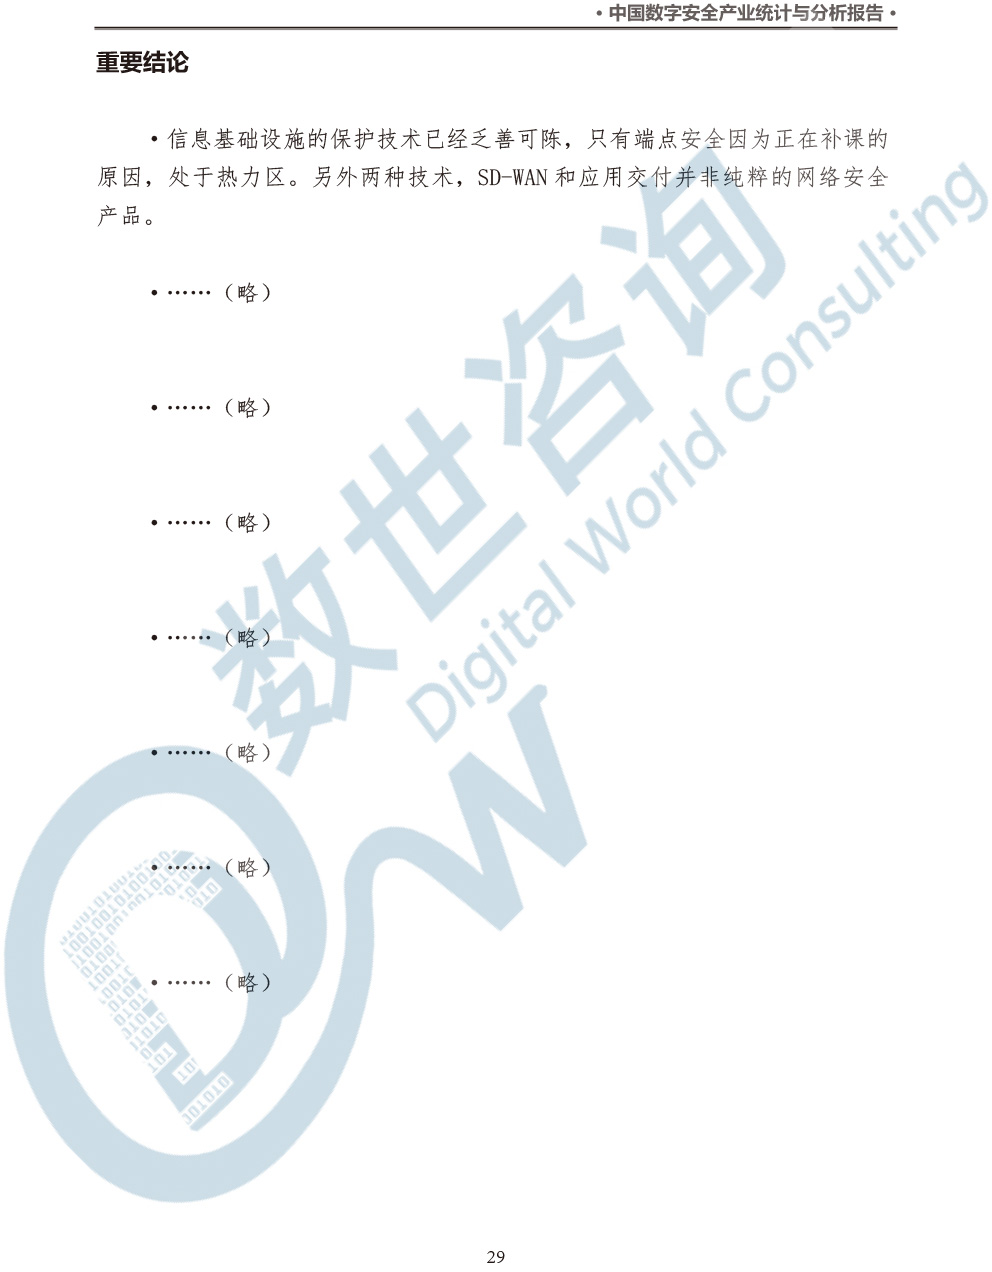 中国数字安全产业统计与分析报告(2022)图-36.jpg